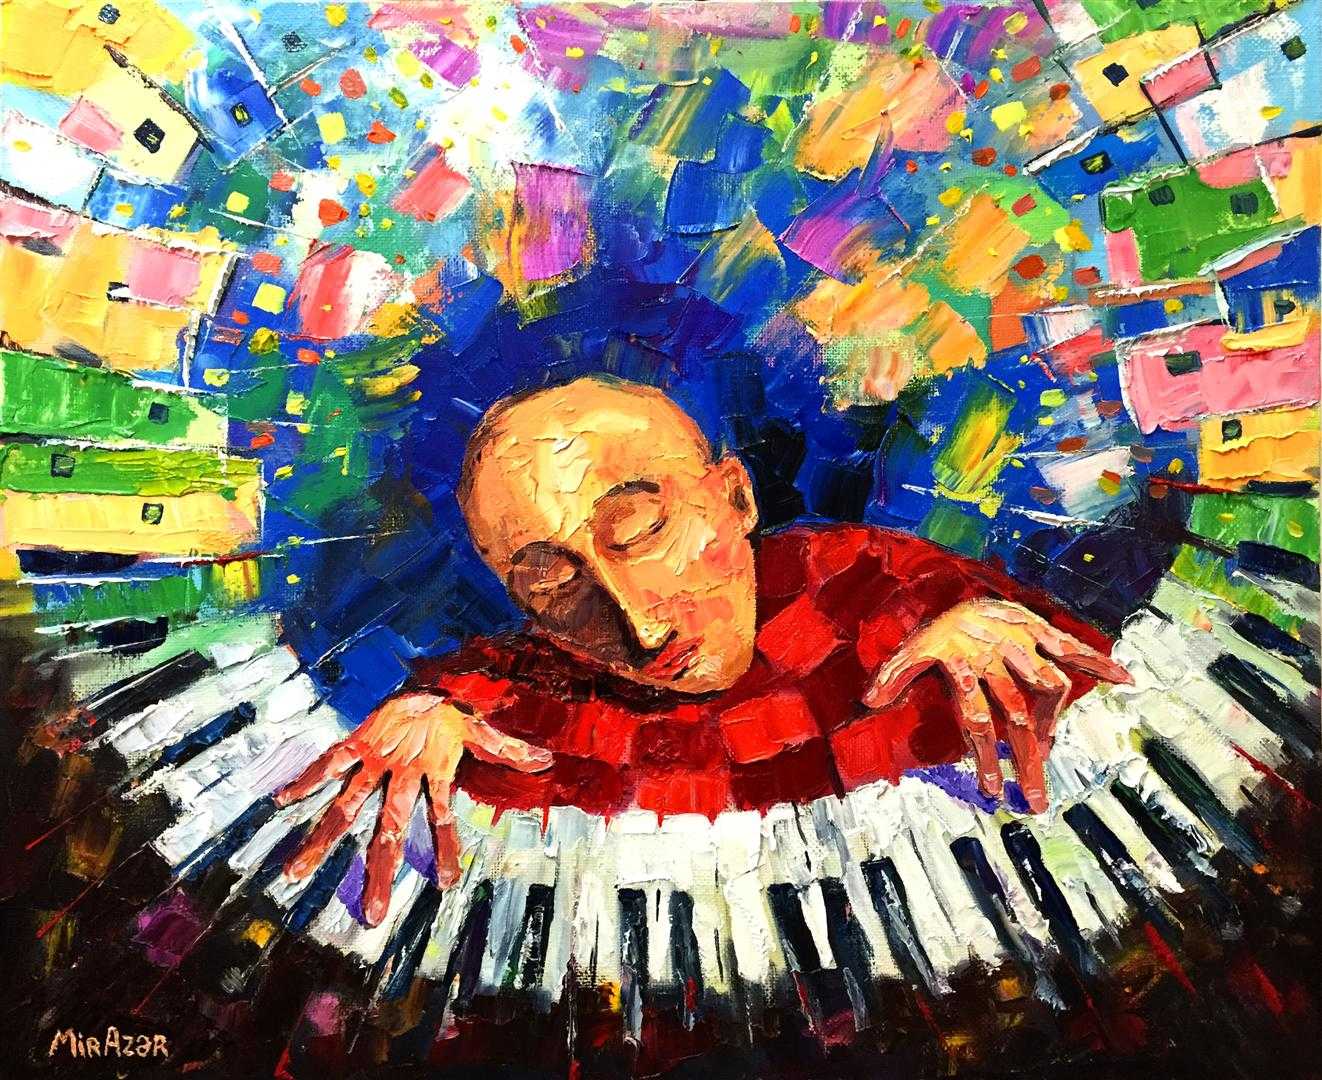 Творческая импровизация. Художник мир азер Абдуллаев. Импровизация в искусстве. Музыкальная импровизация.